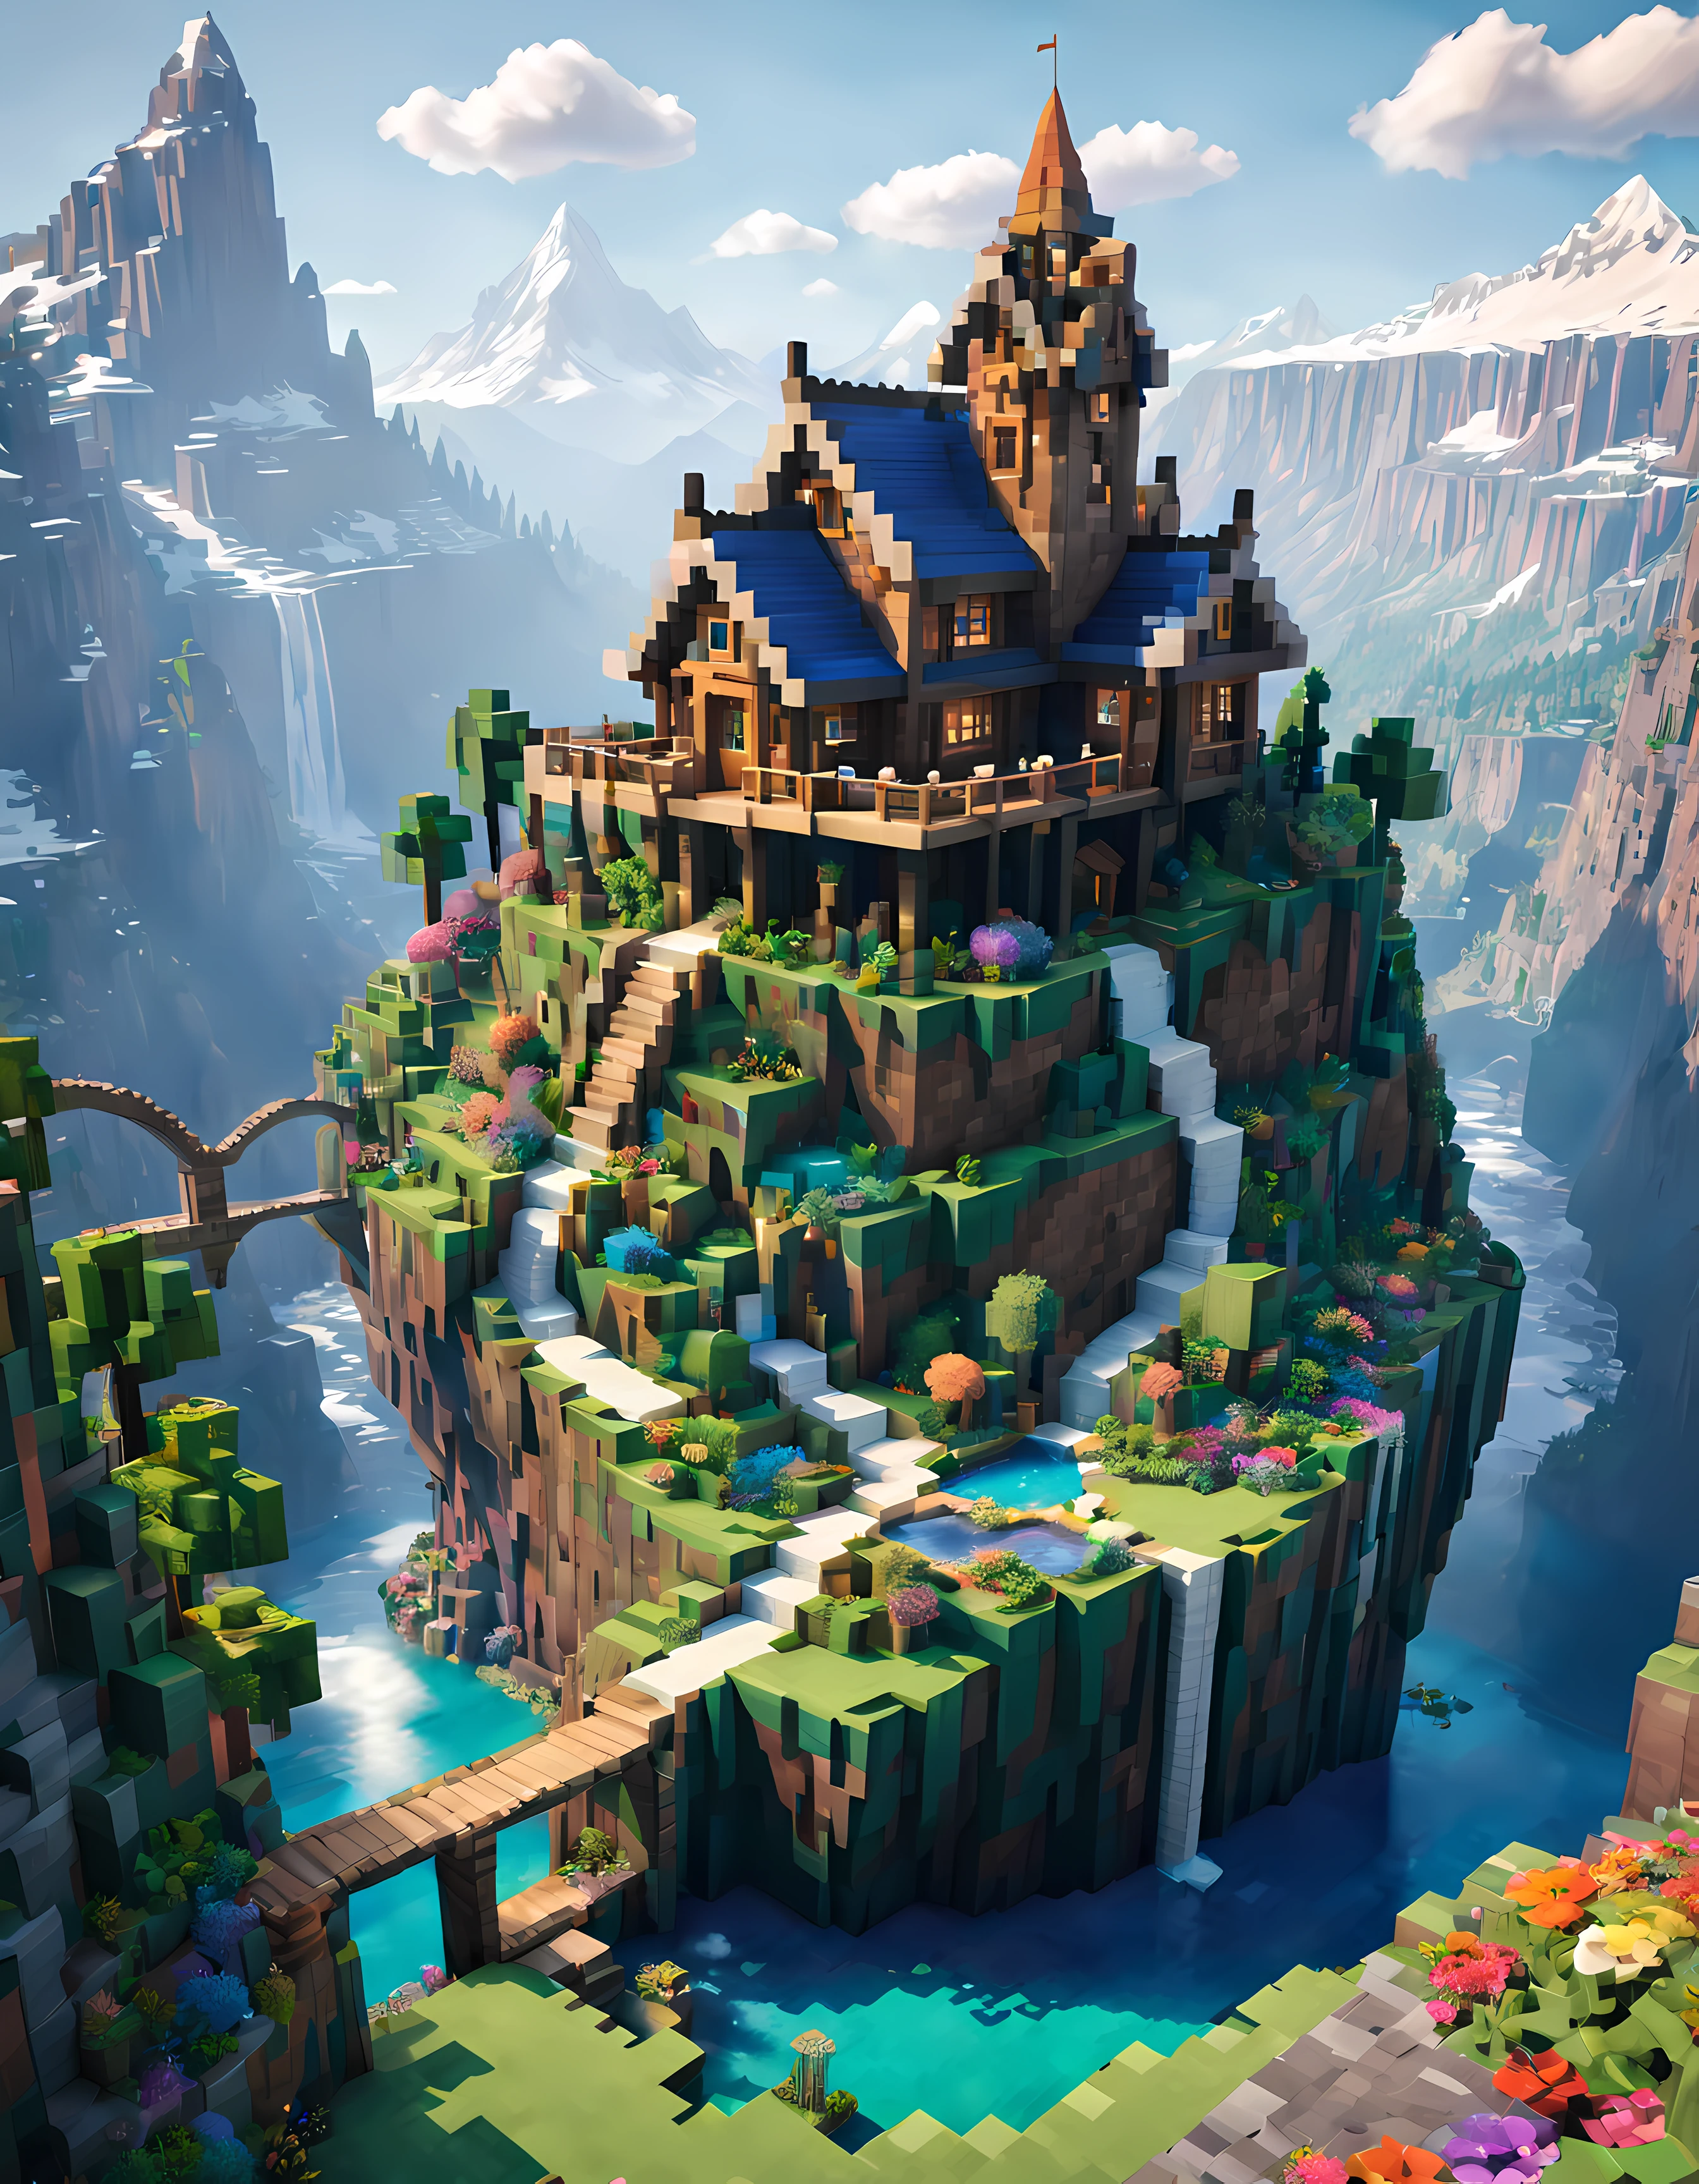 สไตล์ Minecraft (สมจริงมาก:1.3), (ยิงระยะไกล) ของ (กระท่อมนางฟ้าสูงใหญ่:1.2) มีหน้าต่างทรงกลม, on top ของ rocky hill, ศิลปะสิ่งแวดล้อมwork, ศิลปะสิ่งแวดล้อม, (ตกแต่งหรูหรา), (แม่น้ำลึกลับ), (สวย:1.4), (มีเสน่ห์:1.3), เต็มไปด้วยหิมะ (ภูเขา), ธรรมชาติฤดูร้อน, บล็อค, ตัวหนังสือ, สีสันสดใส, (อีเกิล), ดอกไม้, สะพานที่ไม่มีตัวตน, waterfalls ในระยะไกล, (รุ้ง:0.5), (ต้นไม้โลก) ในระยะไกล